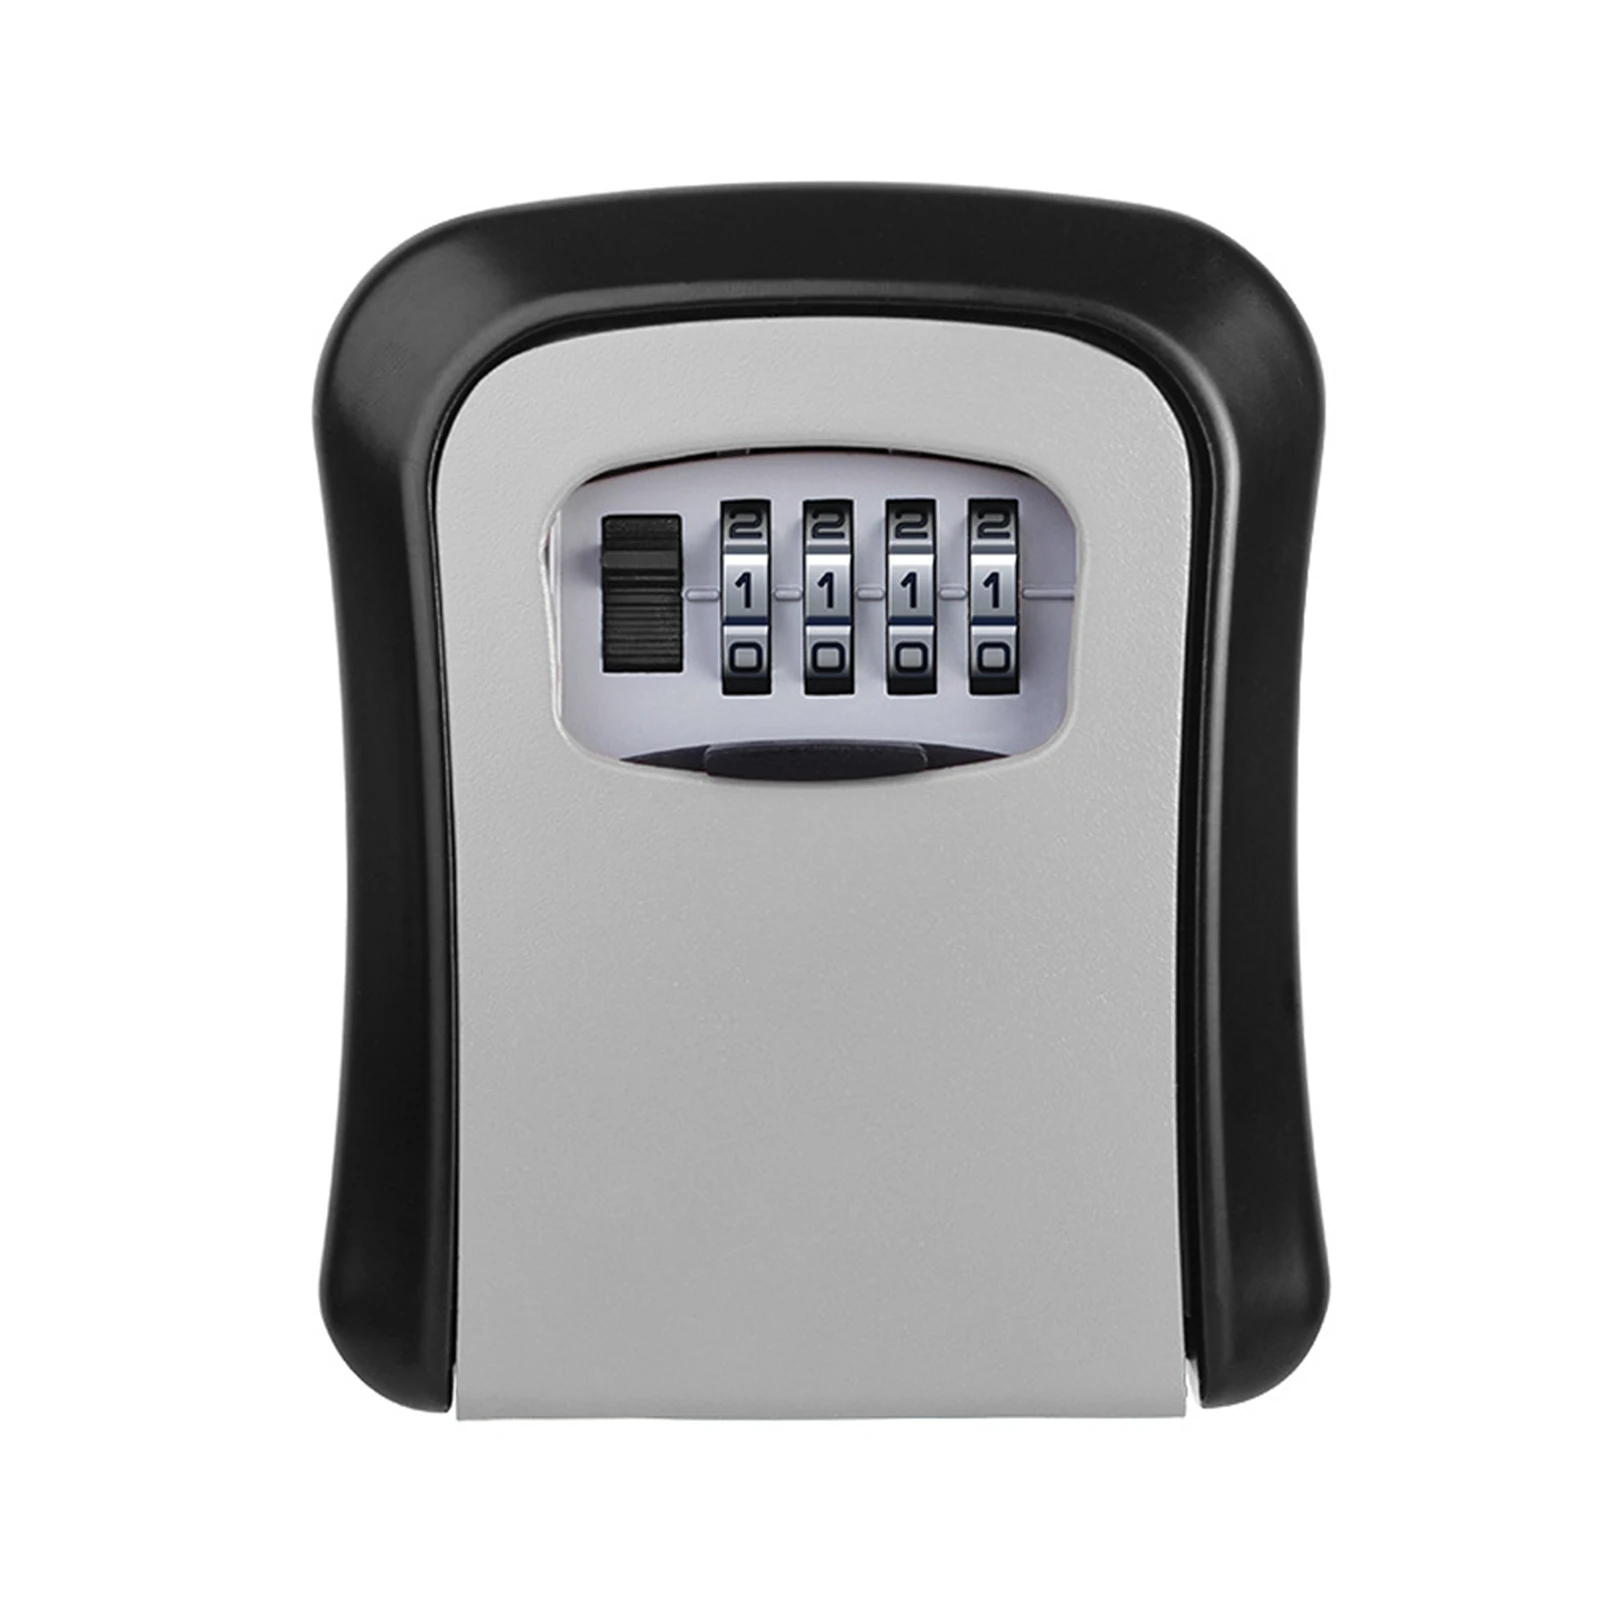 Cassetta portachiavi in plastica completa con serratura per password, porta con  chiave, per riporre le chiavi (nera)